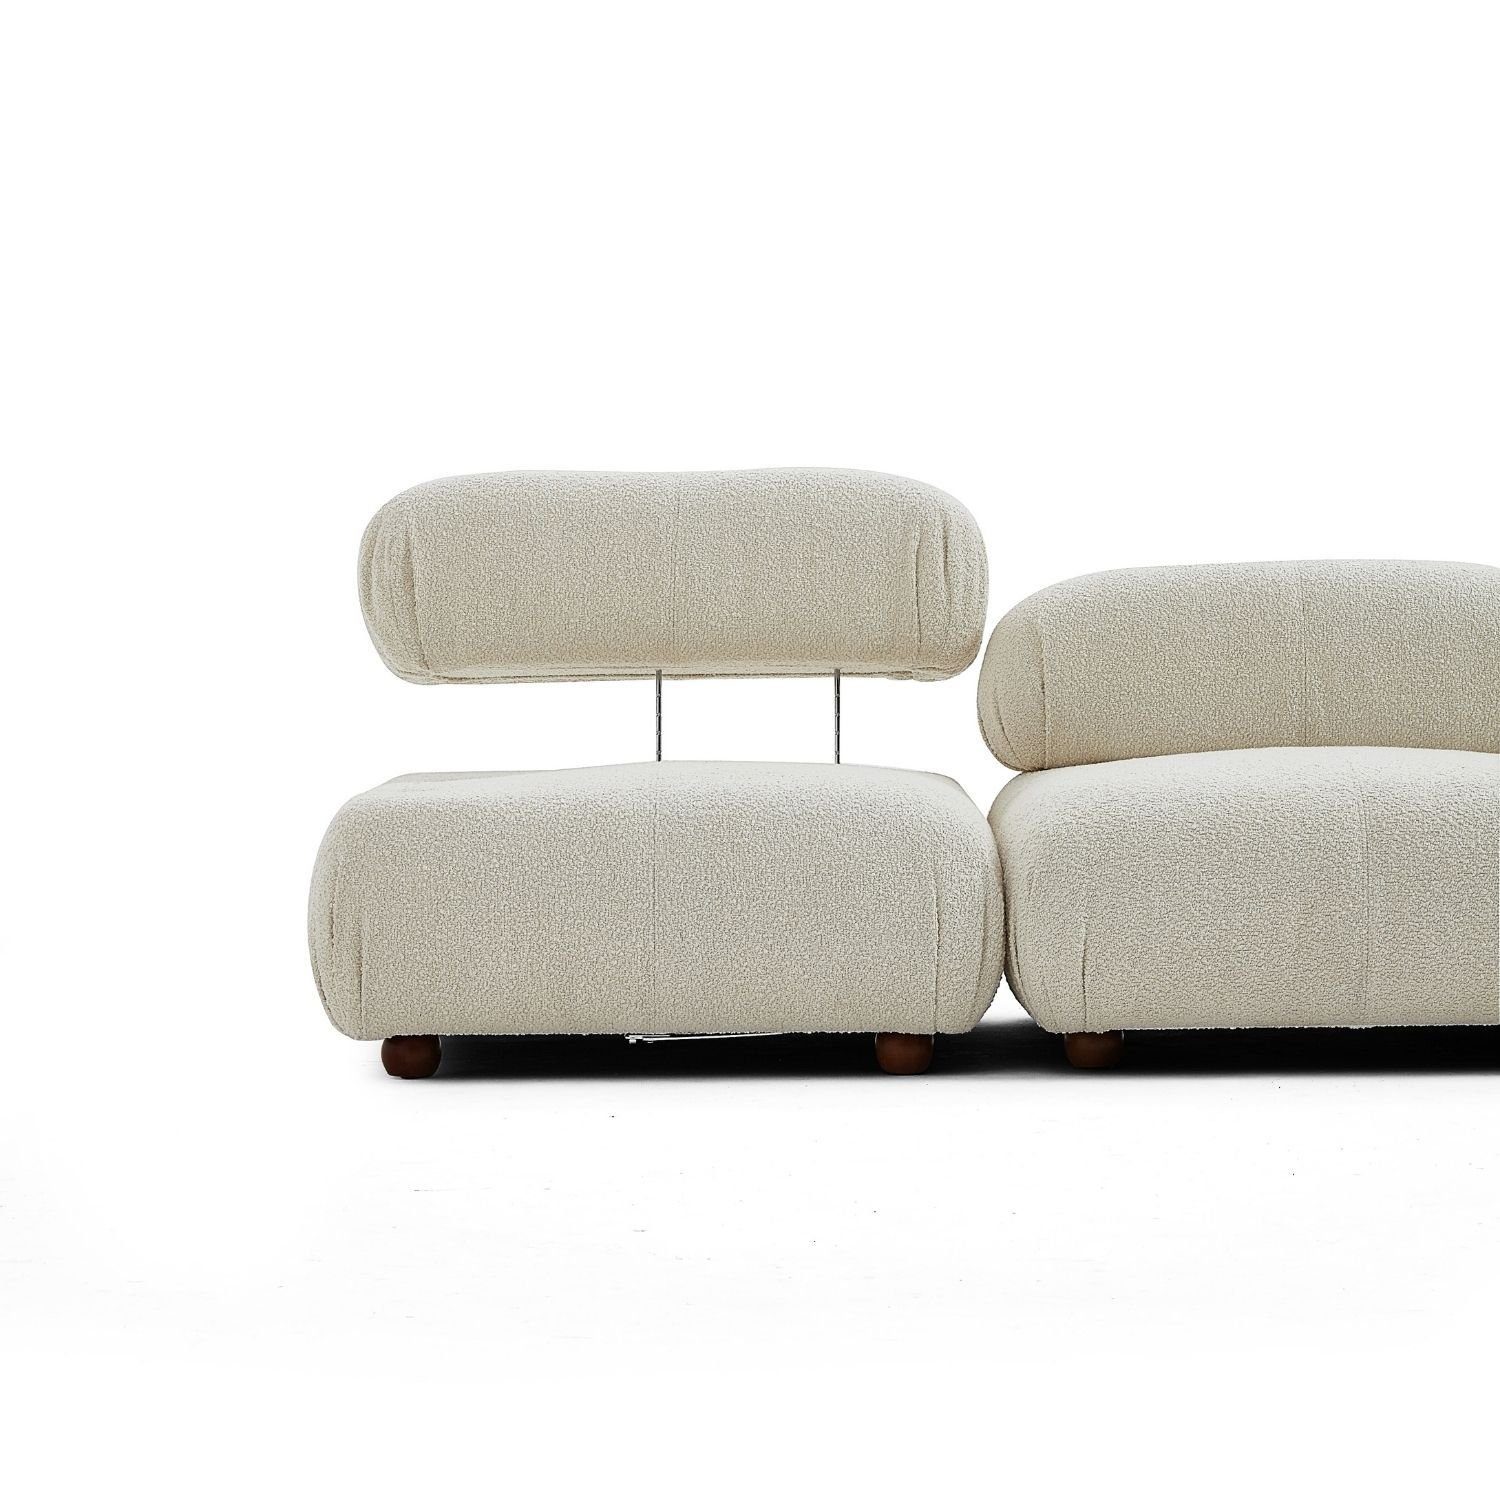 aus enthalten! Knuffiges Aufbau Preis im Generation und me neueste Sitzmöbel Graubraun-Lieferung Touch Sofa Komfortschaum